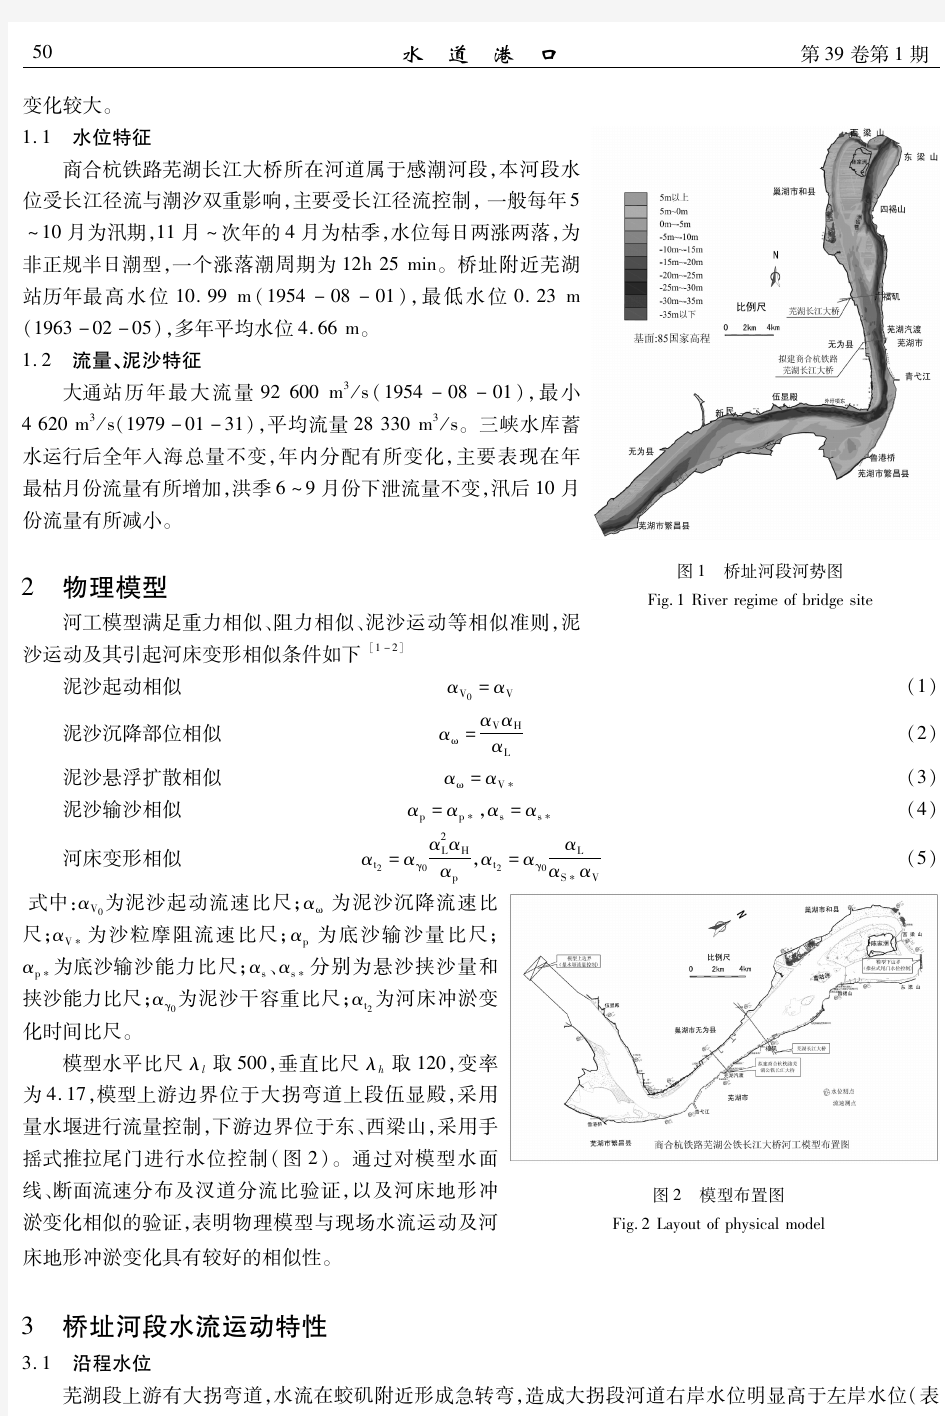 商合杭铁路芜湖长江大桥通航条件及水动力影响试验研究